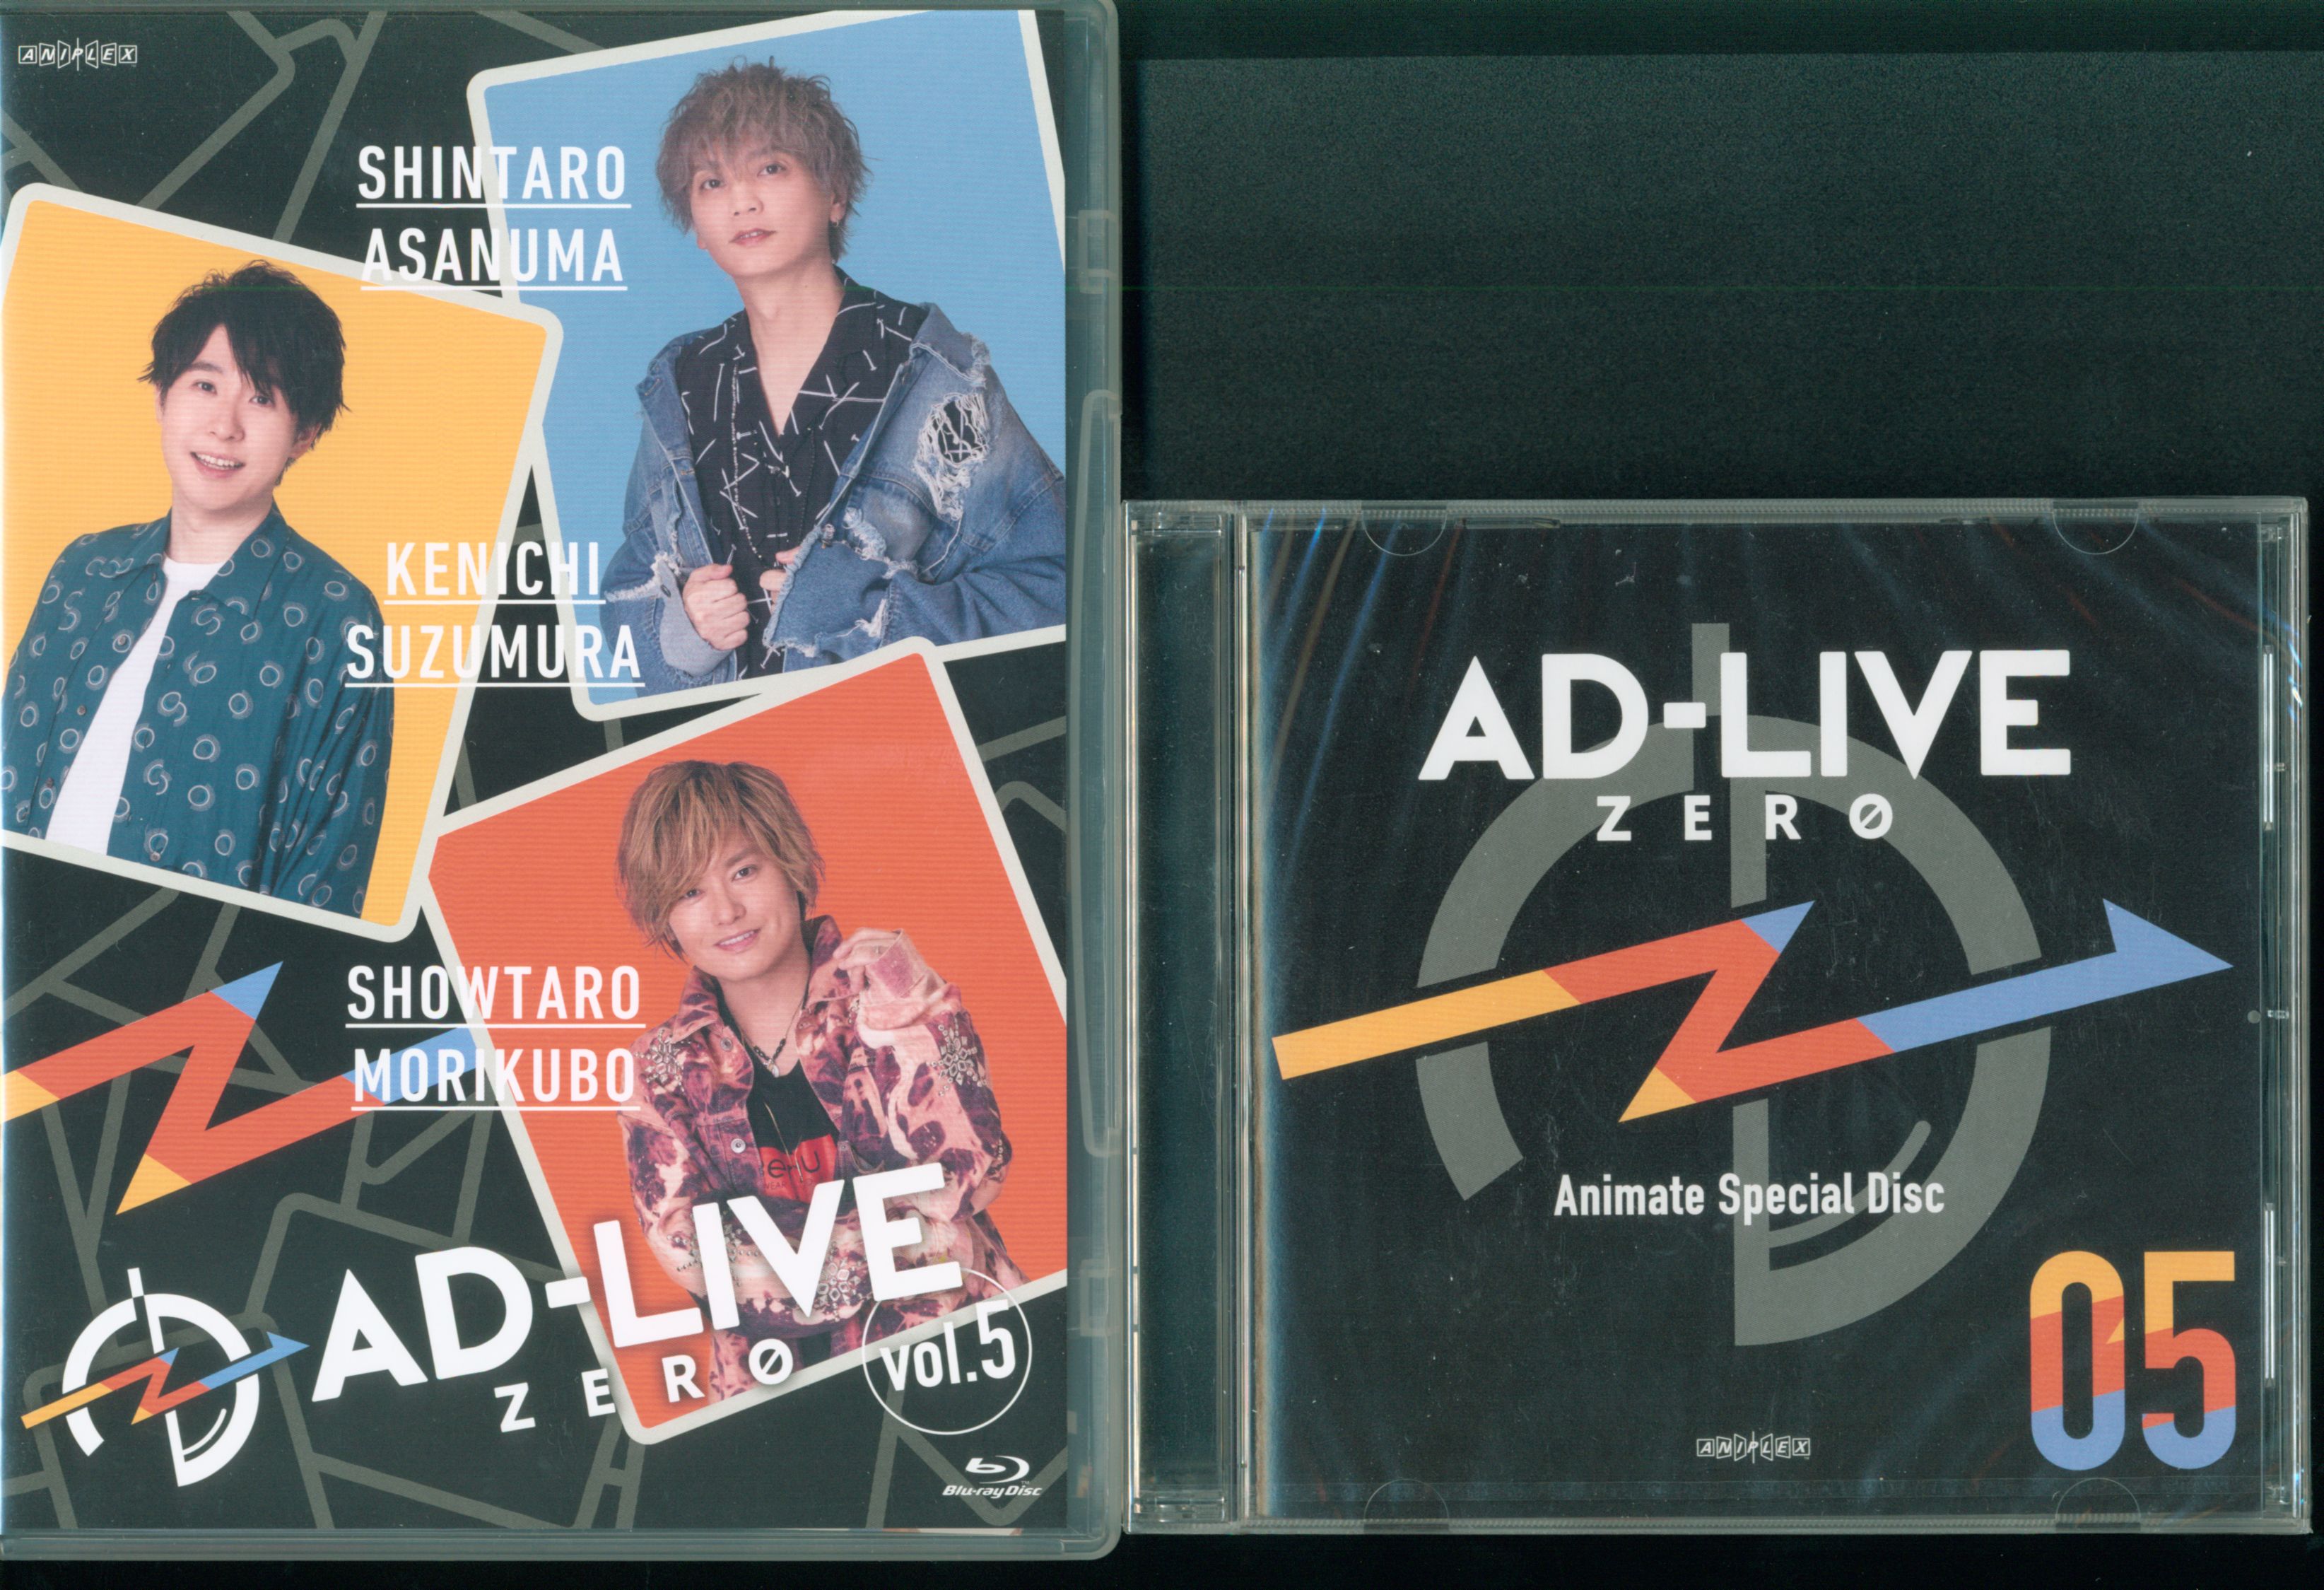 AD-LIVE ZERO」 第5巻 (浅沼晋太郎×鈴村健一×森久保祥太郎) Blu-ray